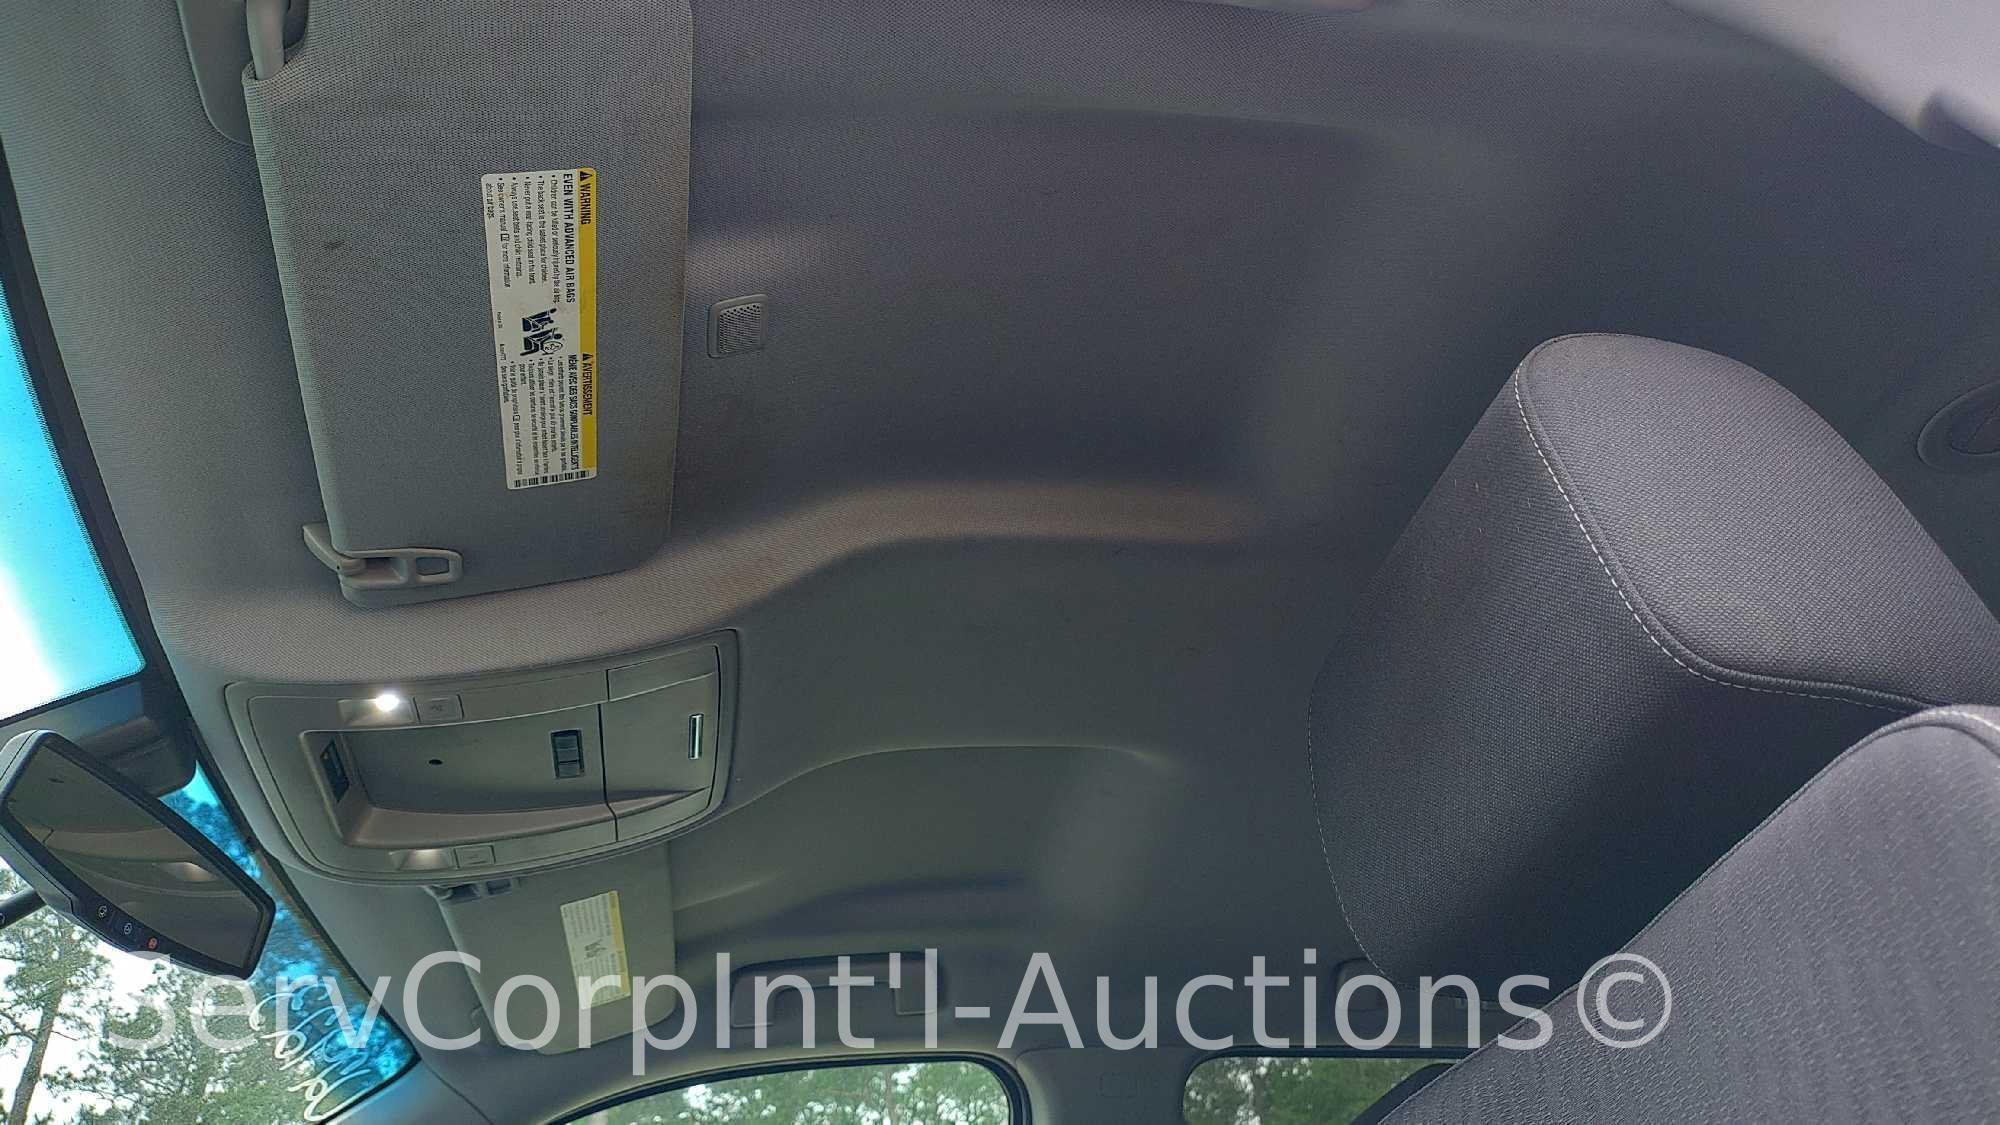 2015 Chevrolet Tahoe Multipurpose Vehicle (MPV), VIN # 1GNLC2EC1FR254413